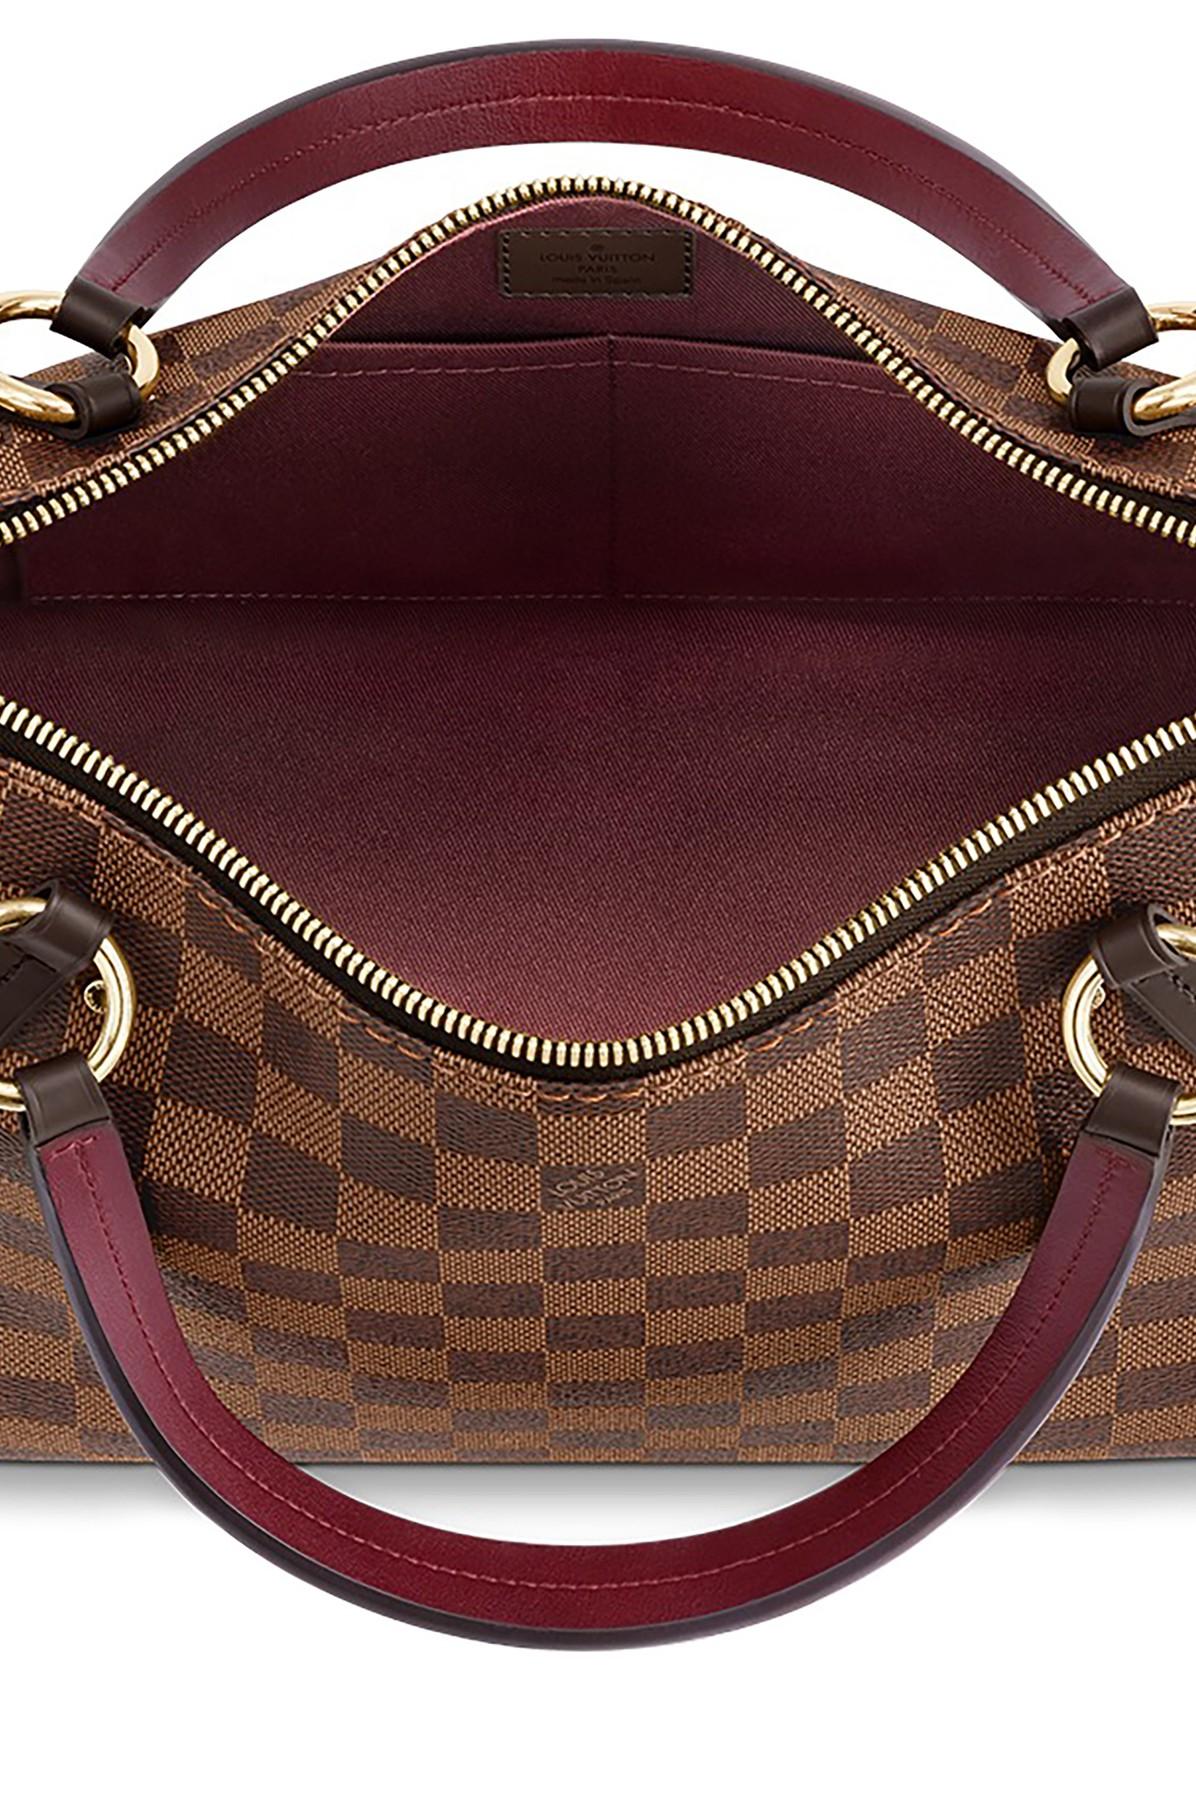 Louis Vuitton - LV Lymington Damier Azur Canvas Top Handle w/ Shoulder Strap Kit